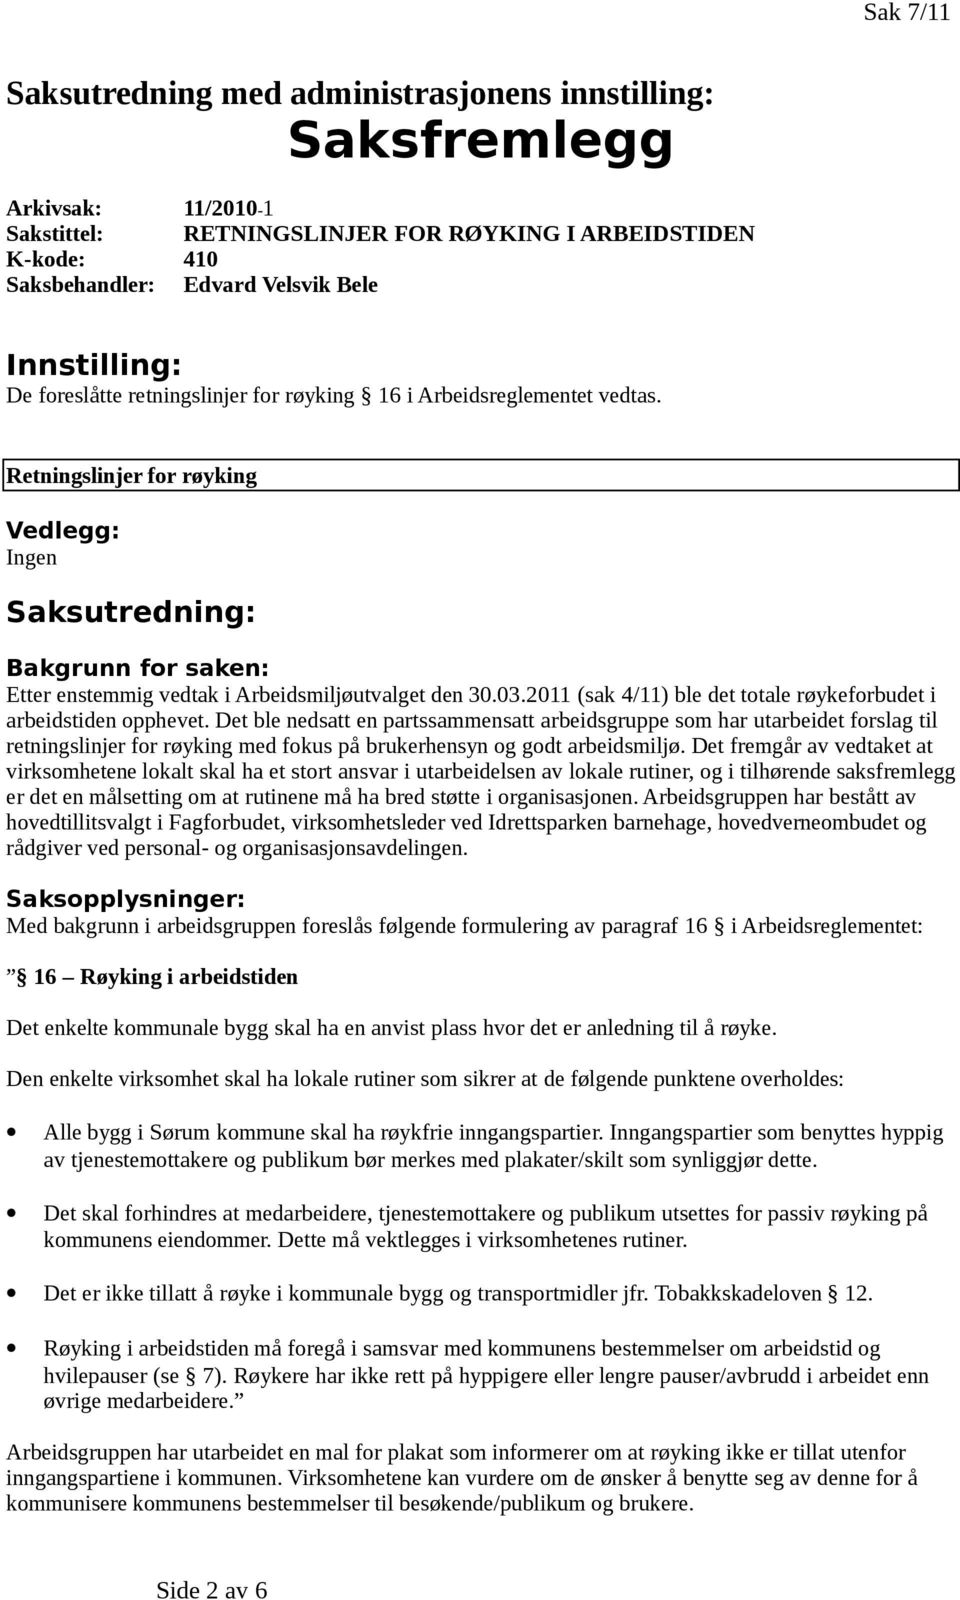 Retningslinjer for røyking Vedlegg: Ingen Saksutredning: Bakgrunn for saken: Etter enstemmig vedtak i Arbeidsmiljøutvalget den 30.03.